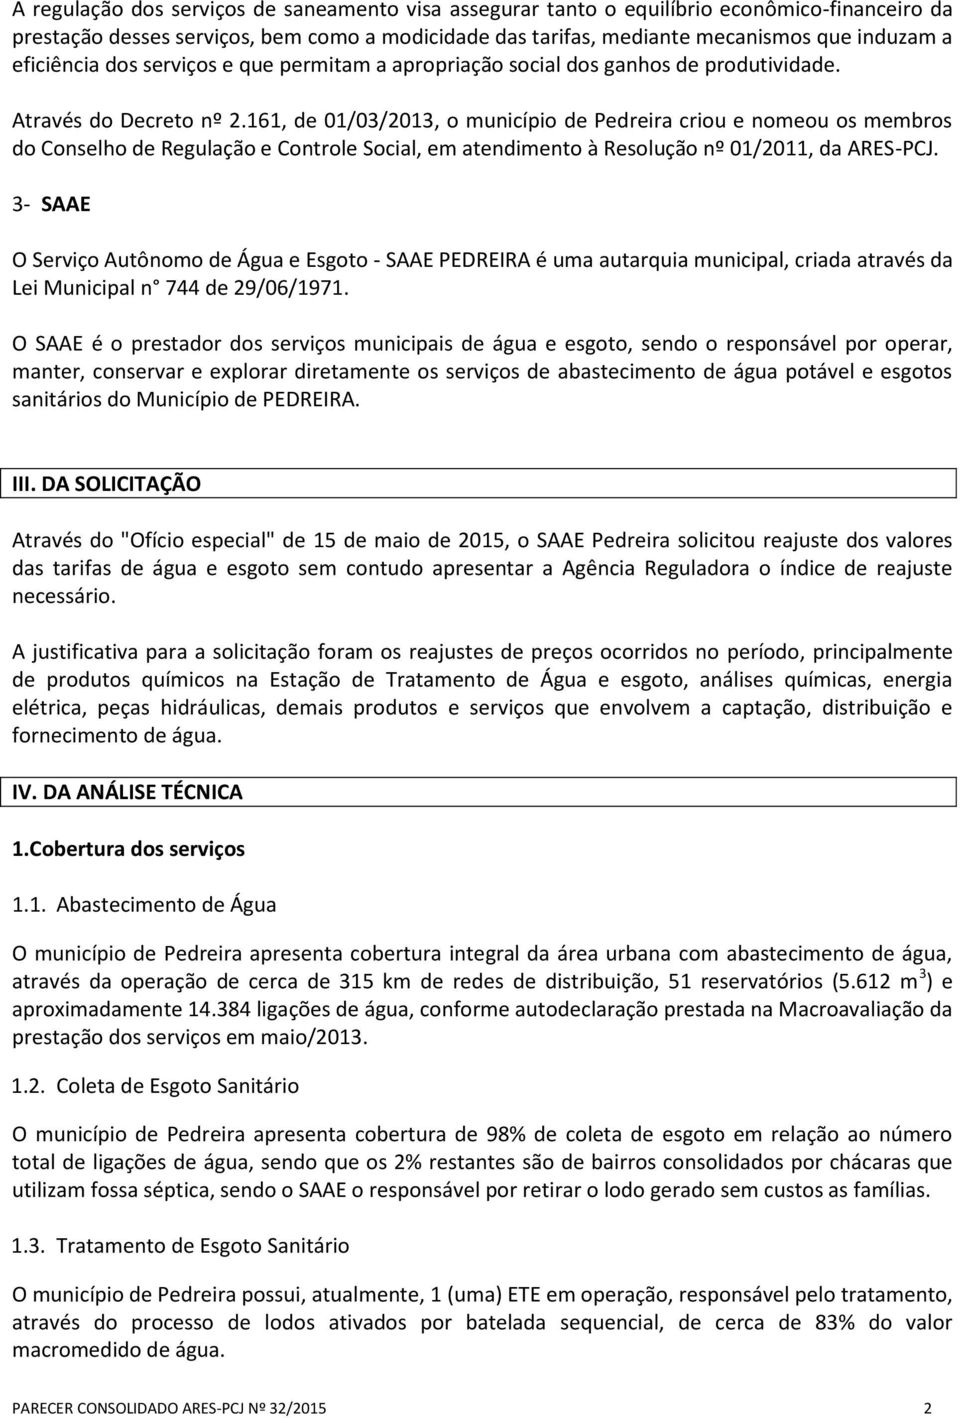 161, de 1/3/213, o município de Pedreira criou e nomeou os membros do Conselho de Regulação e Controle Social, em atendimento à Resolução nº 1/211, da ARES-PCJ.